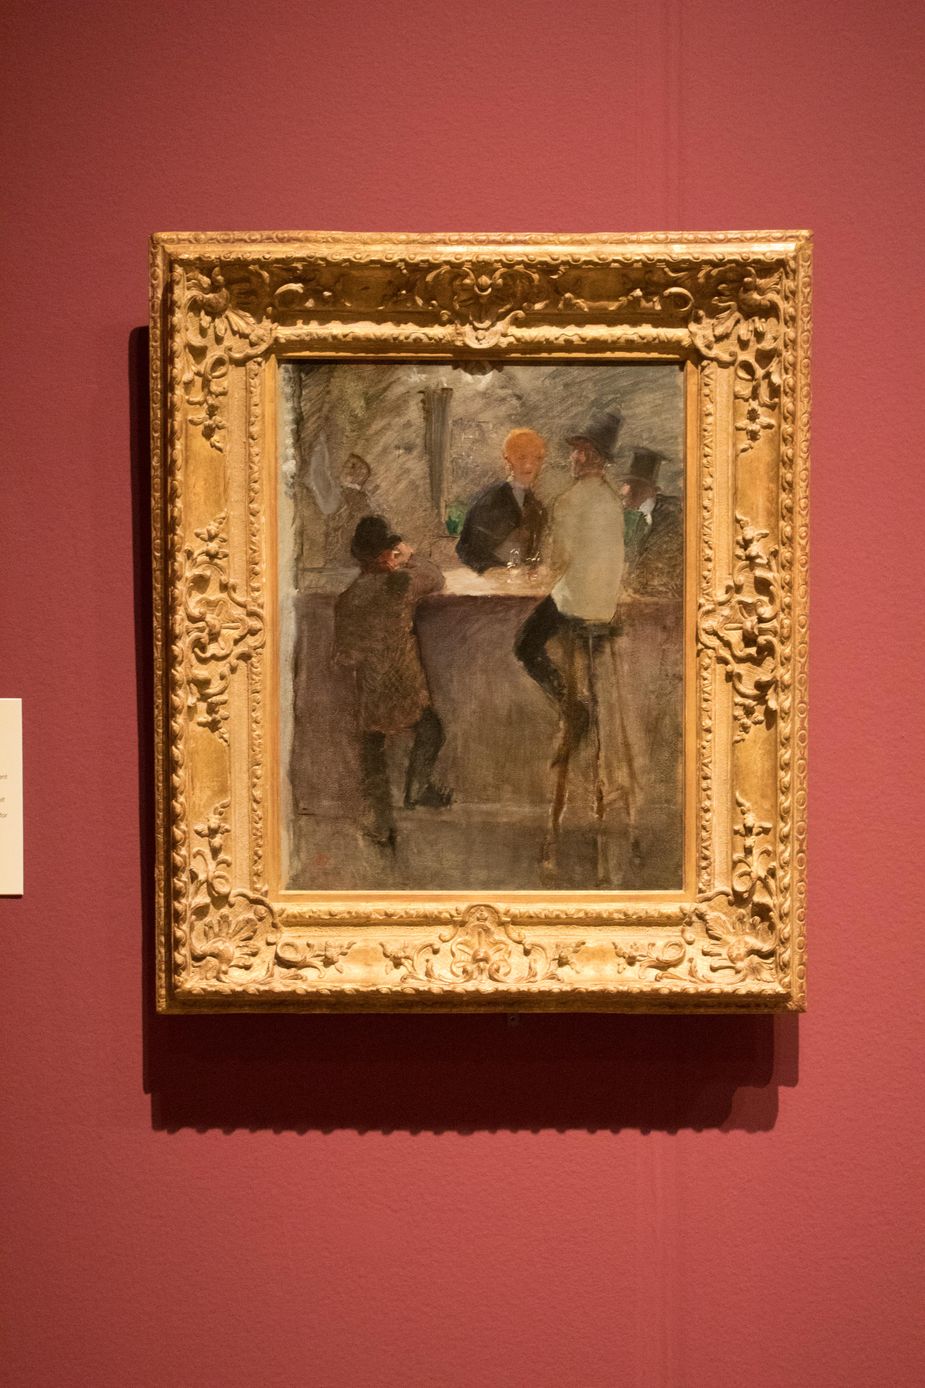 Henri de Toulouse-Lautrec's "At the Bar"